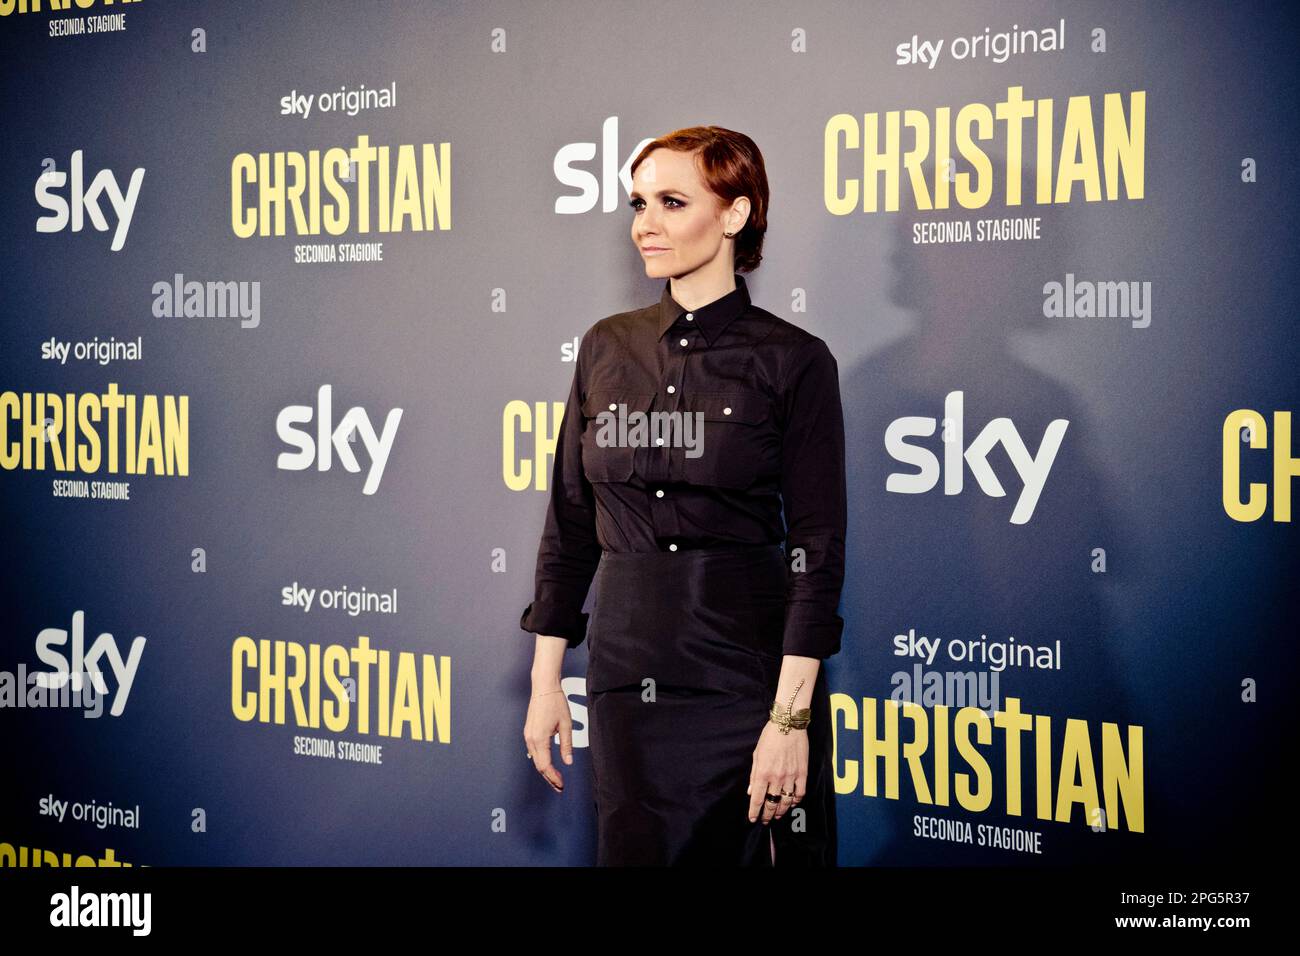 Rome, Italy, 20th March 2023, Camilla Filippi attends the premiere of 'Christian - seconda stagione' at Cinema Barberini (Photo credits: Giovanna Onof Stock Photo